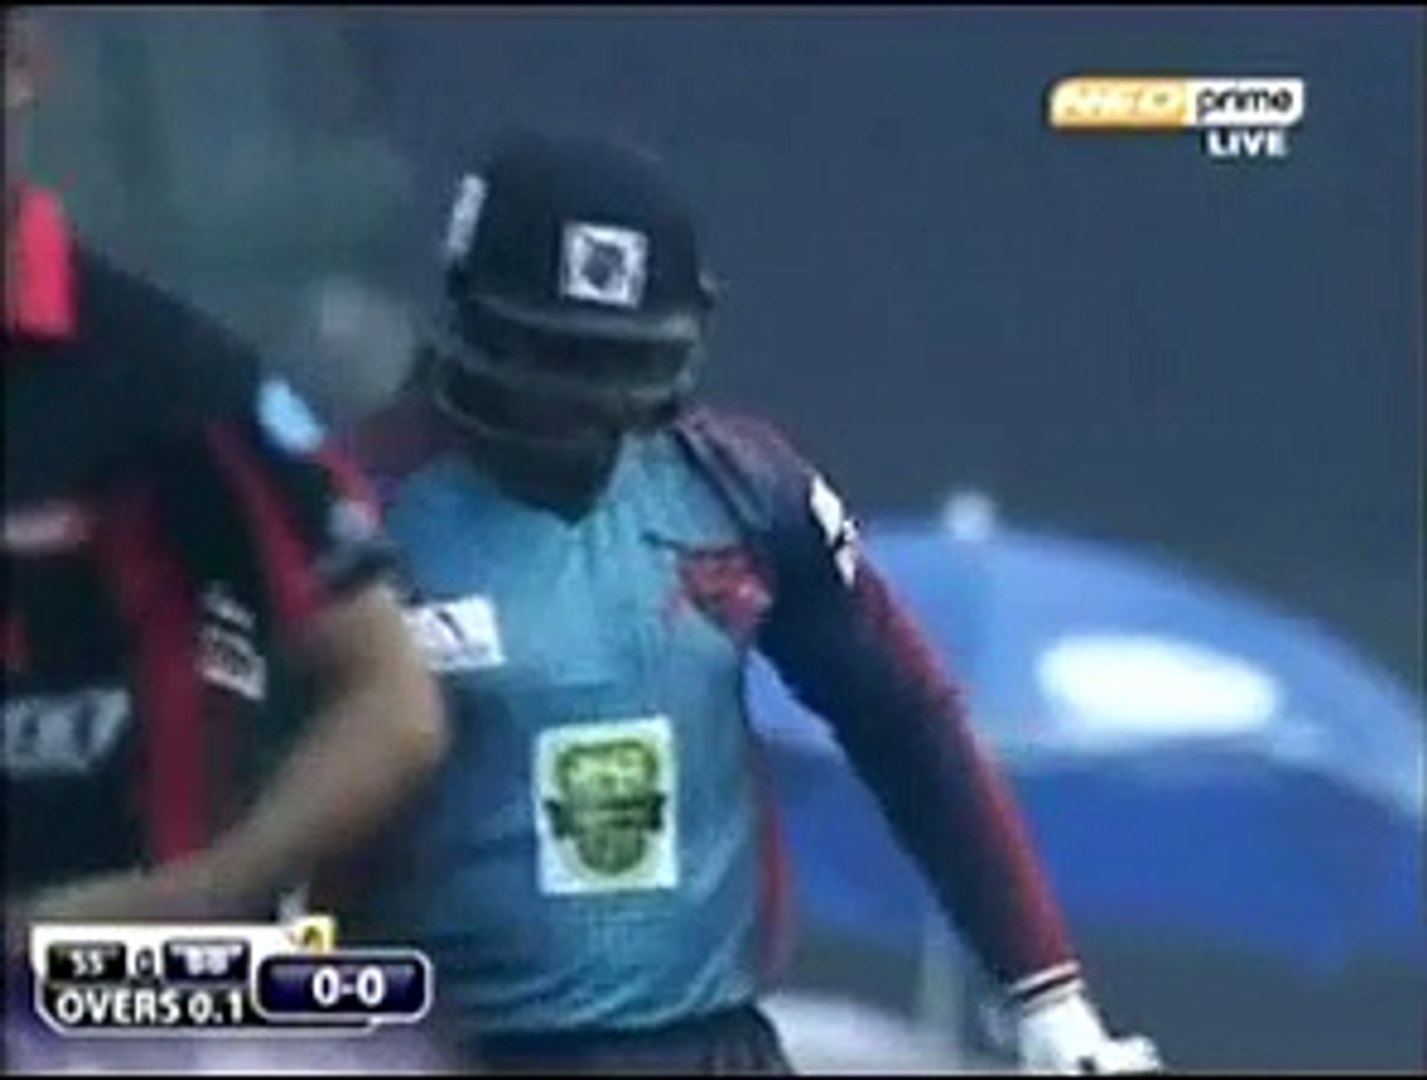 live cricket bpl video